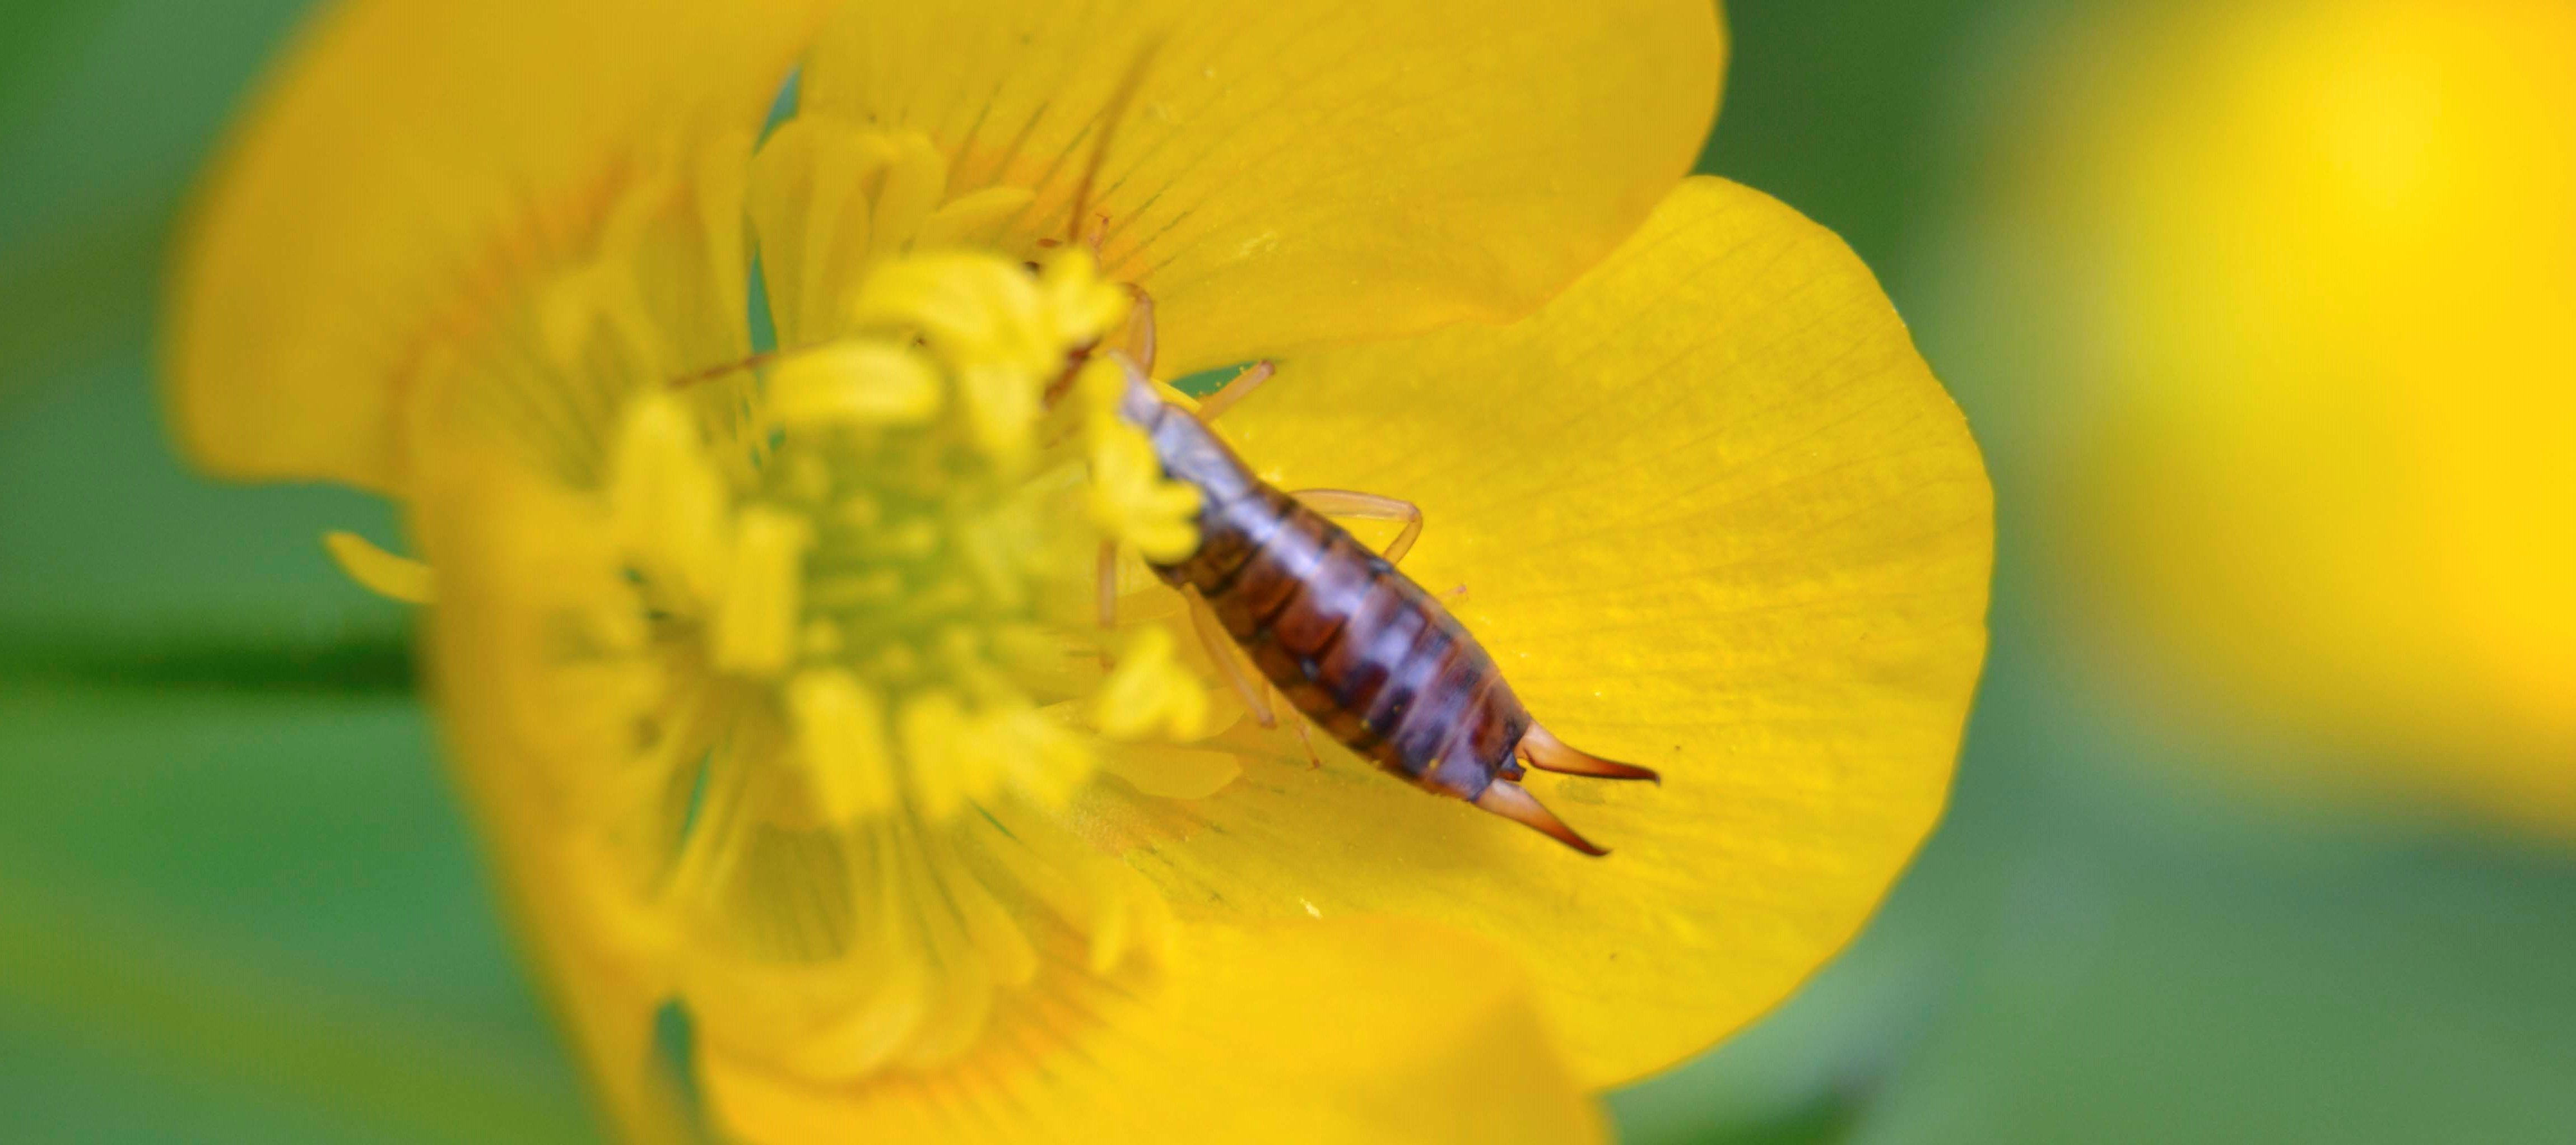 Etude : Identification insectes collectés en bordure de parcelles cultivées